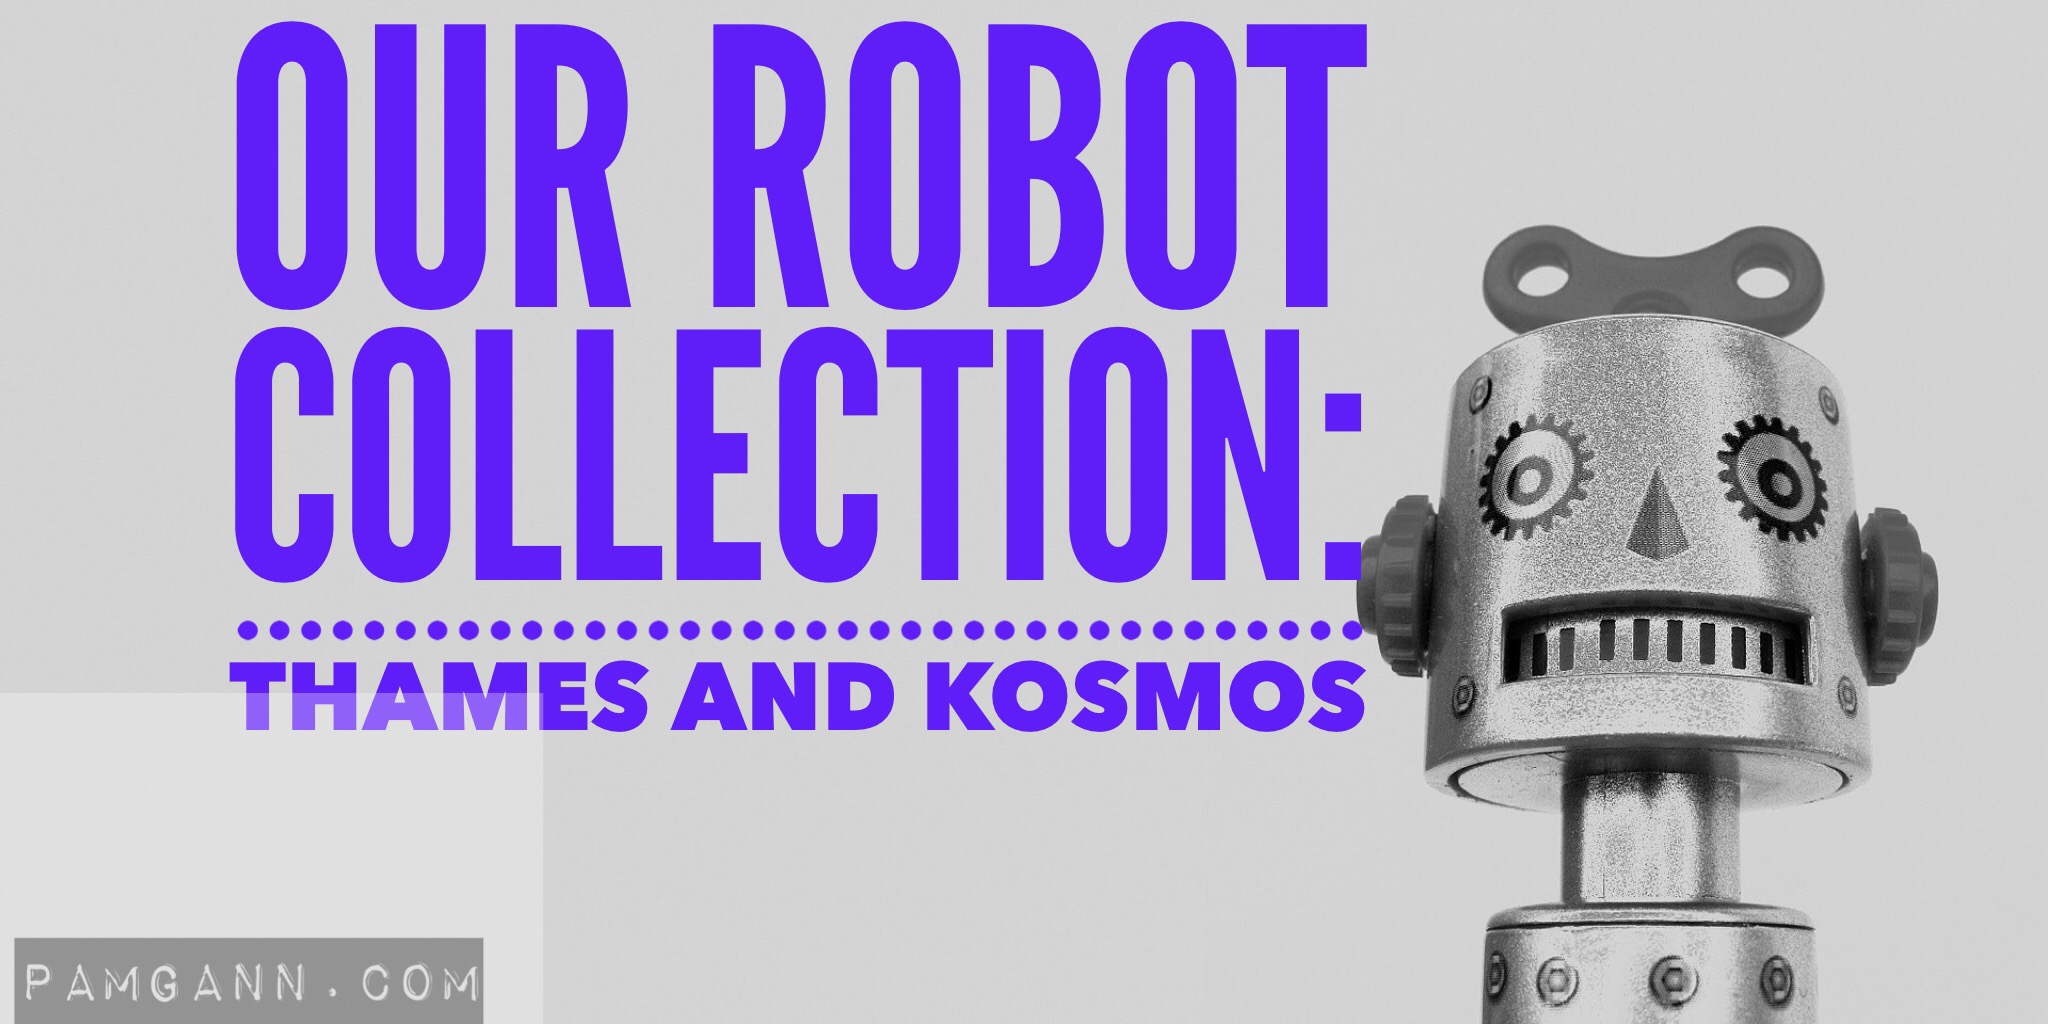 Thames and Kosmos Robots